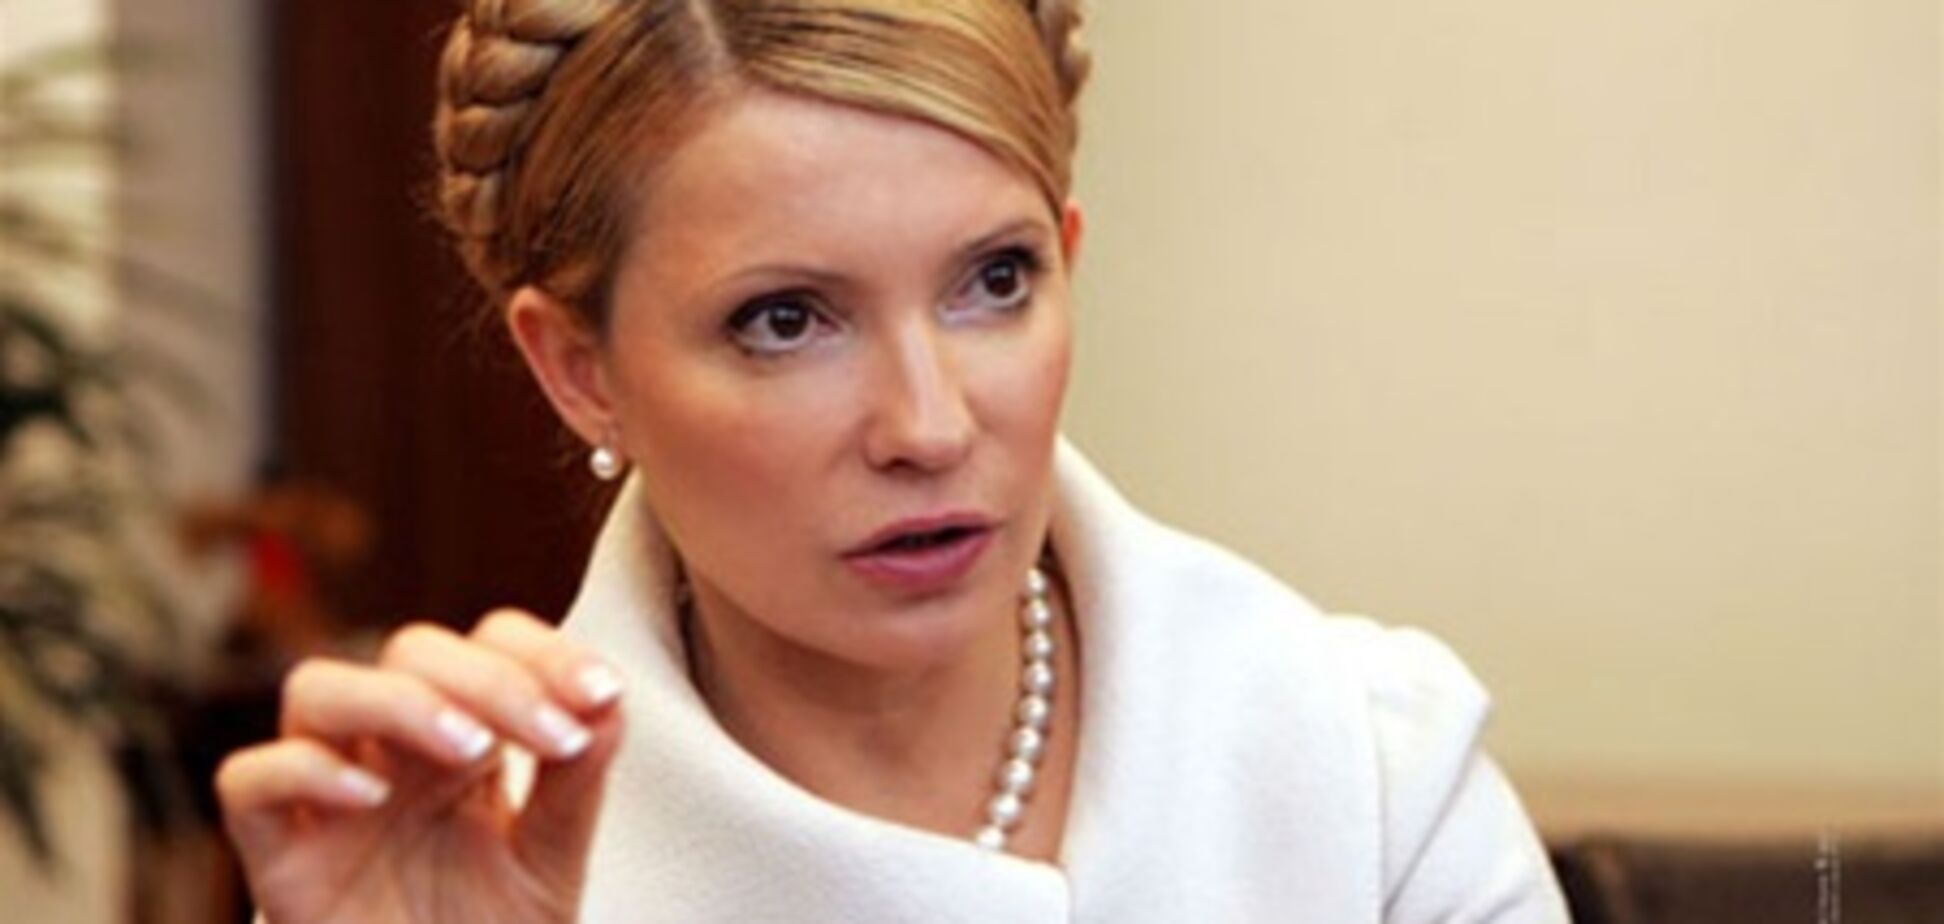 Тимошенко до сих пор не получила протокол допроса - защитник